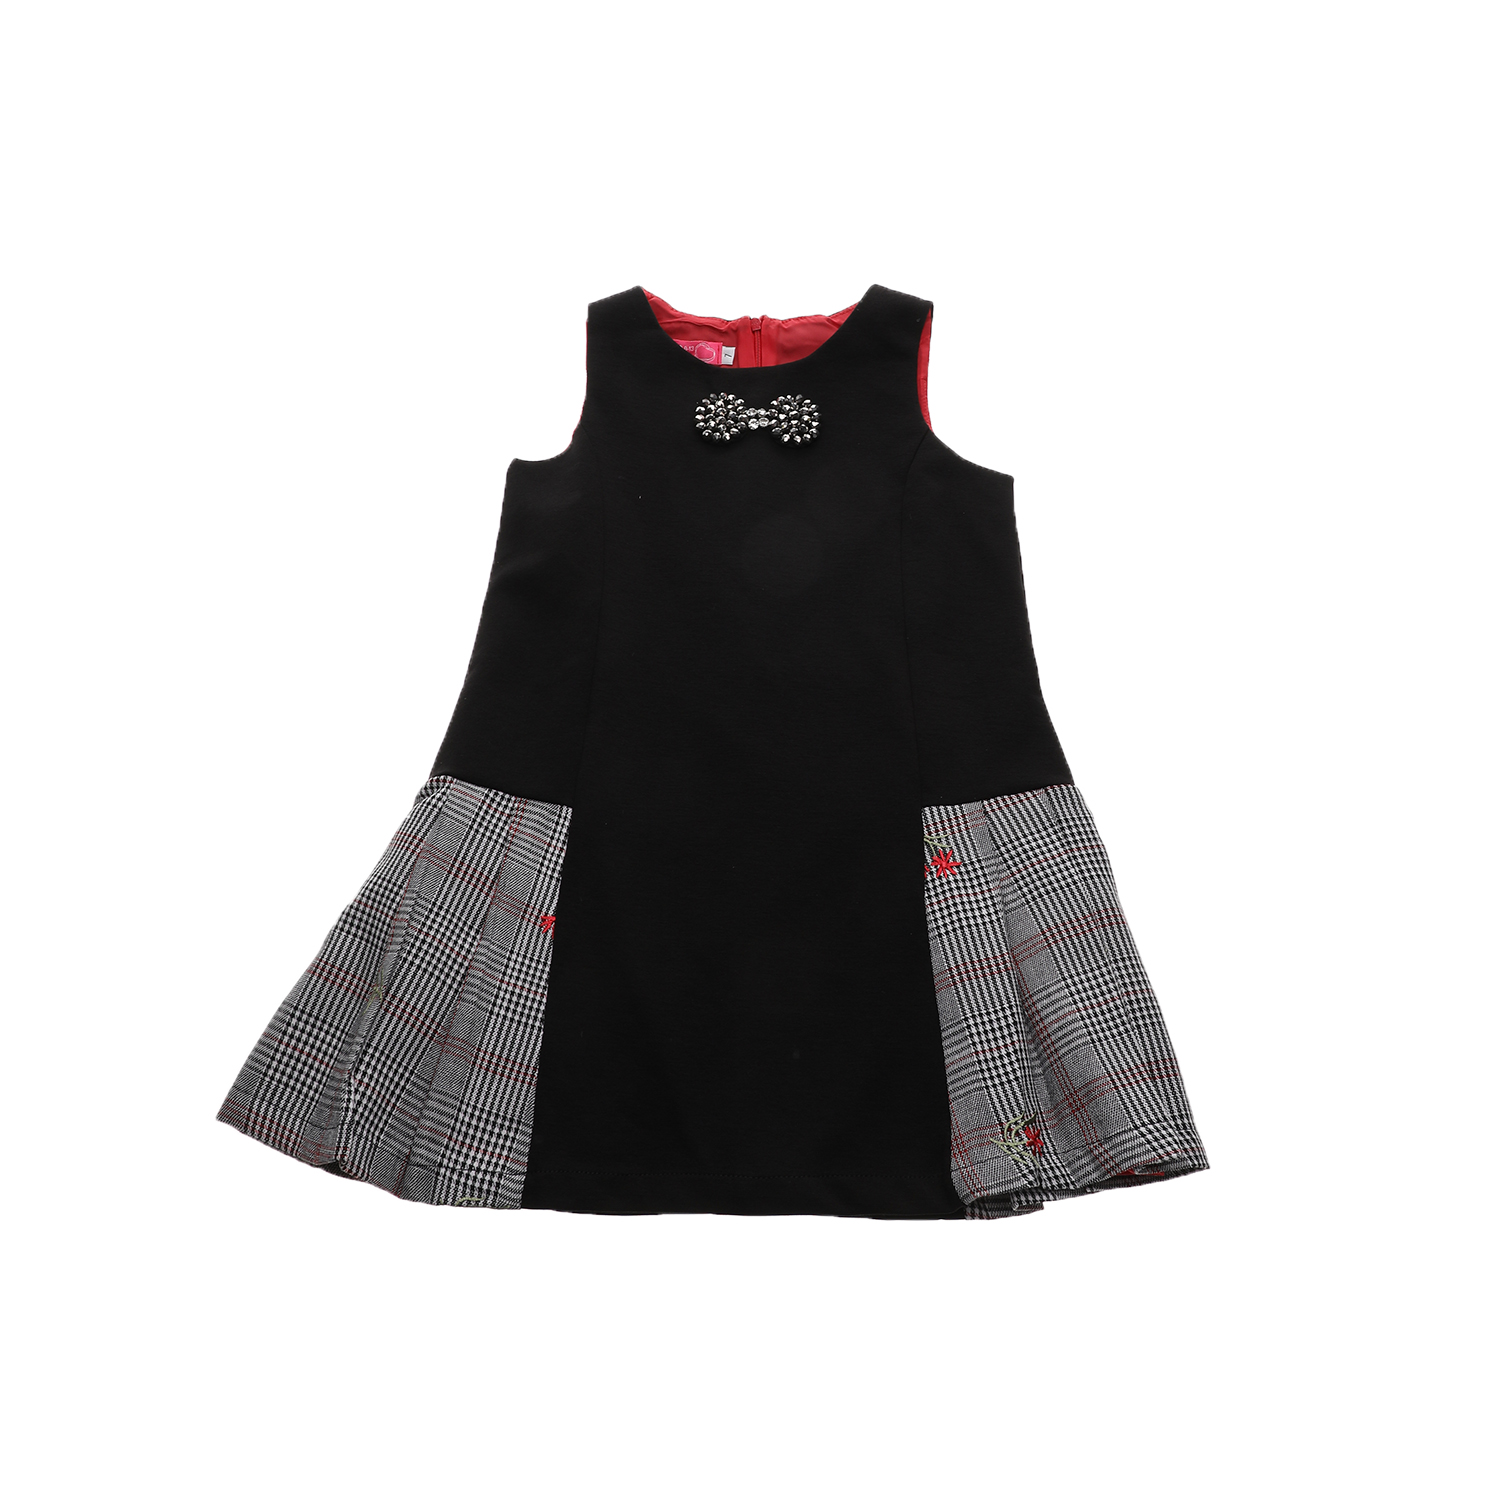 Παιδικά/Girls/Ρούχα/Φορέματα Κοντομάνικα-Αμάνικα SAM 0-13 - Παιδικό φόρεμα SAM 0-13 μαύρο